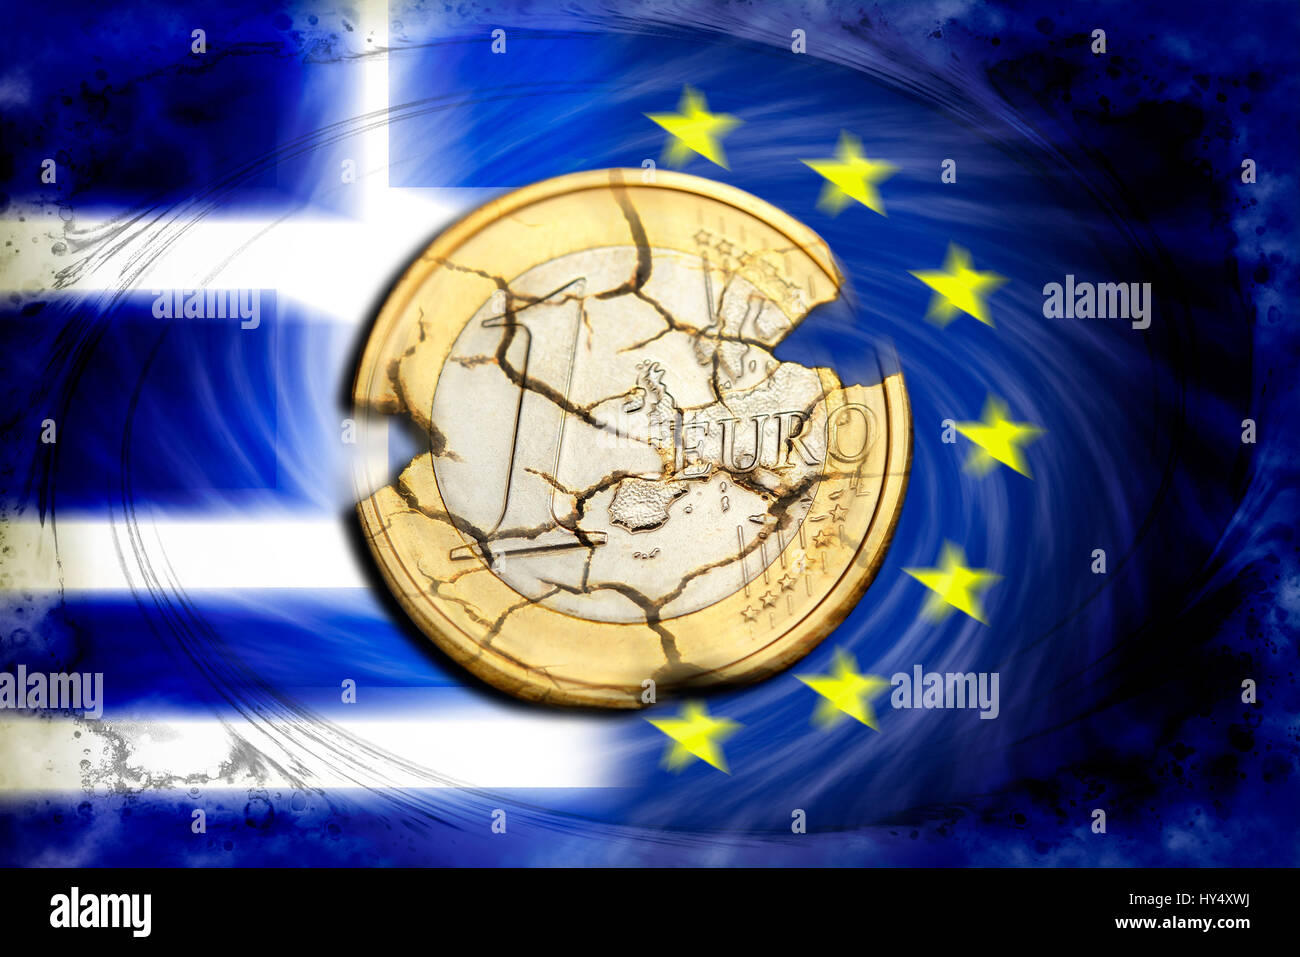 Euro-coin uno con le lacrime prima di Grecia e bandiera UE, simbolico Grexit foto, Ein-Euro-Muenze mit Rissen vor Griechenland- und UE-Fahne, Symbolfoto Grexi Foto Stock